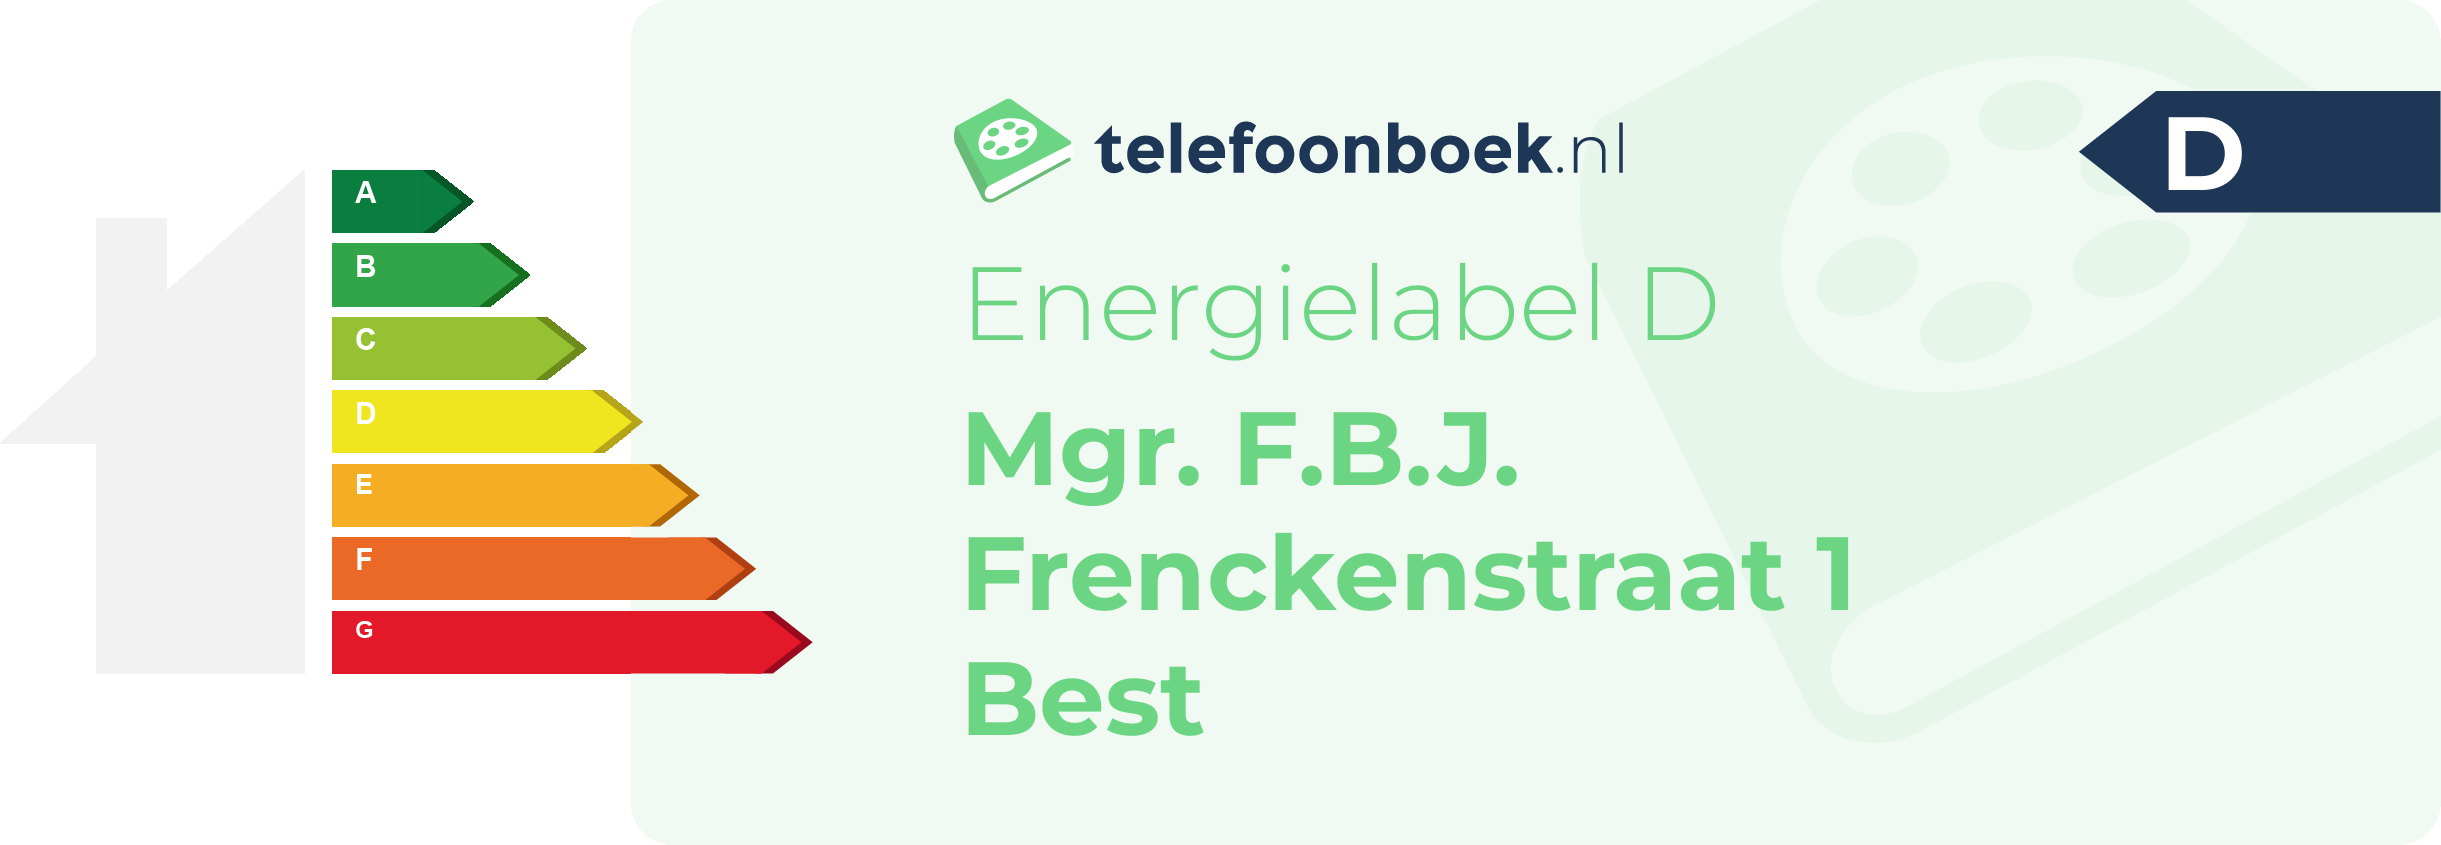 Energielabel Mgr. F.B.J. Frenckenstraat 1 Best